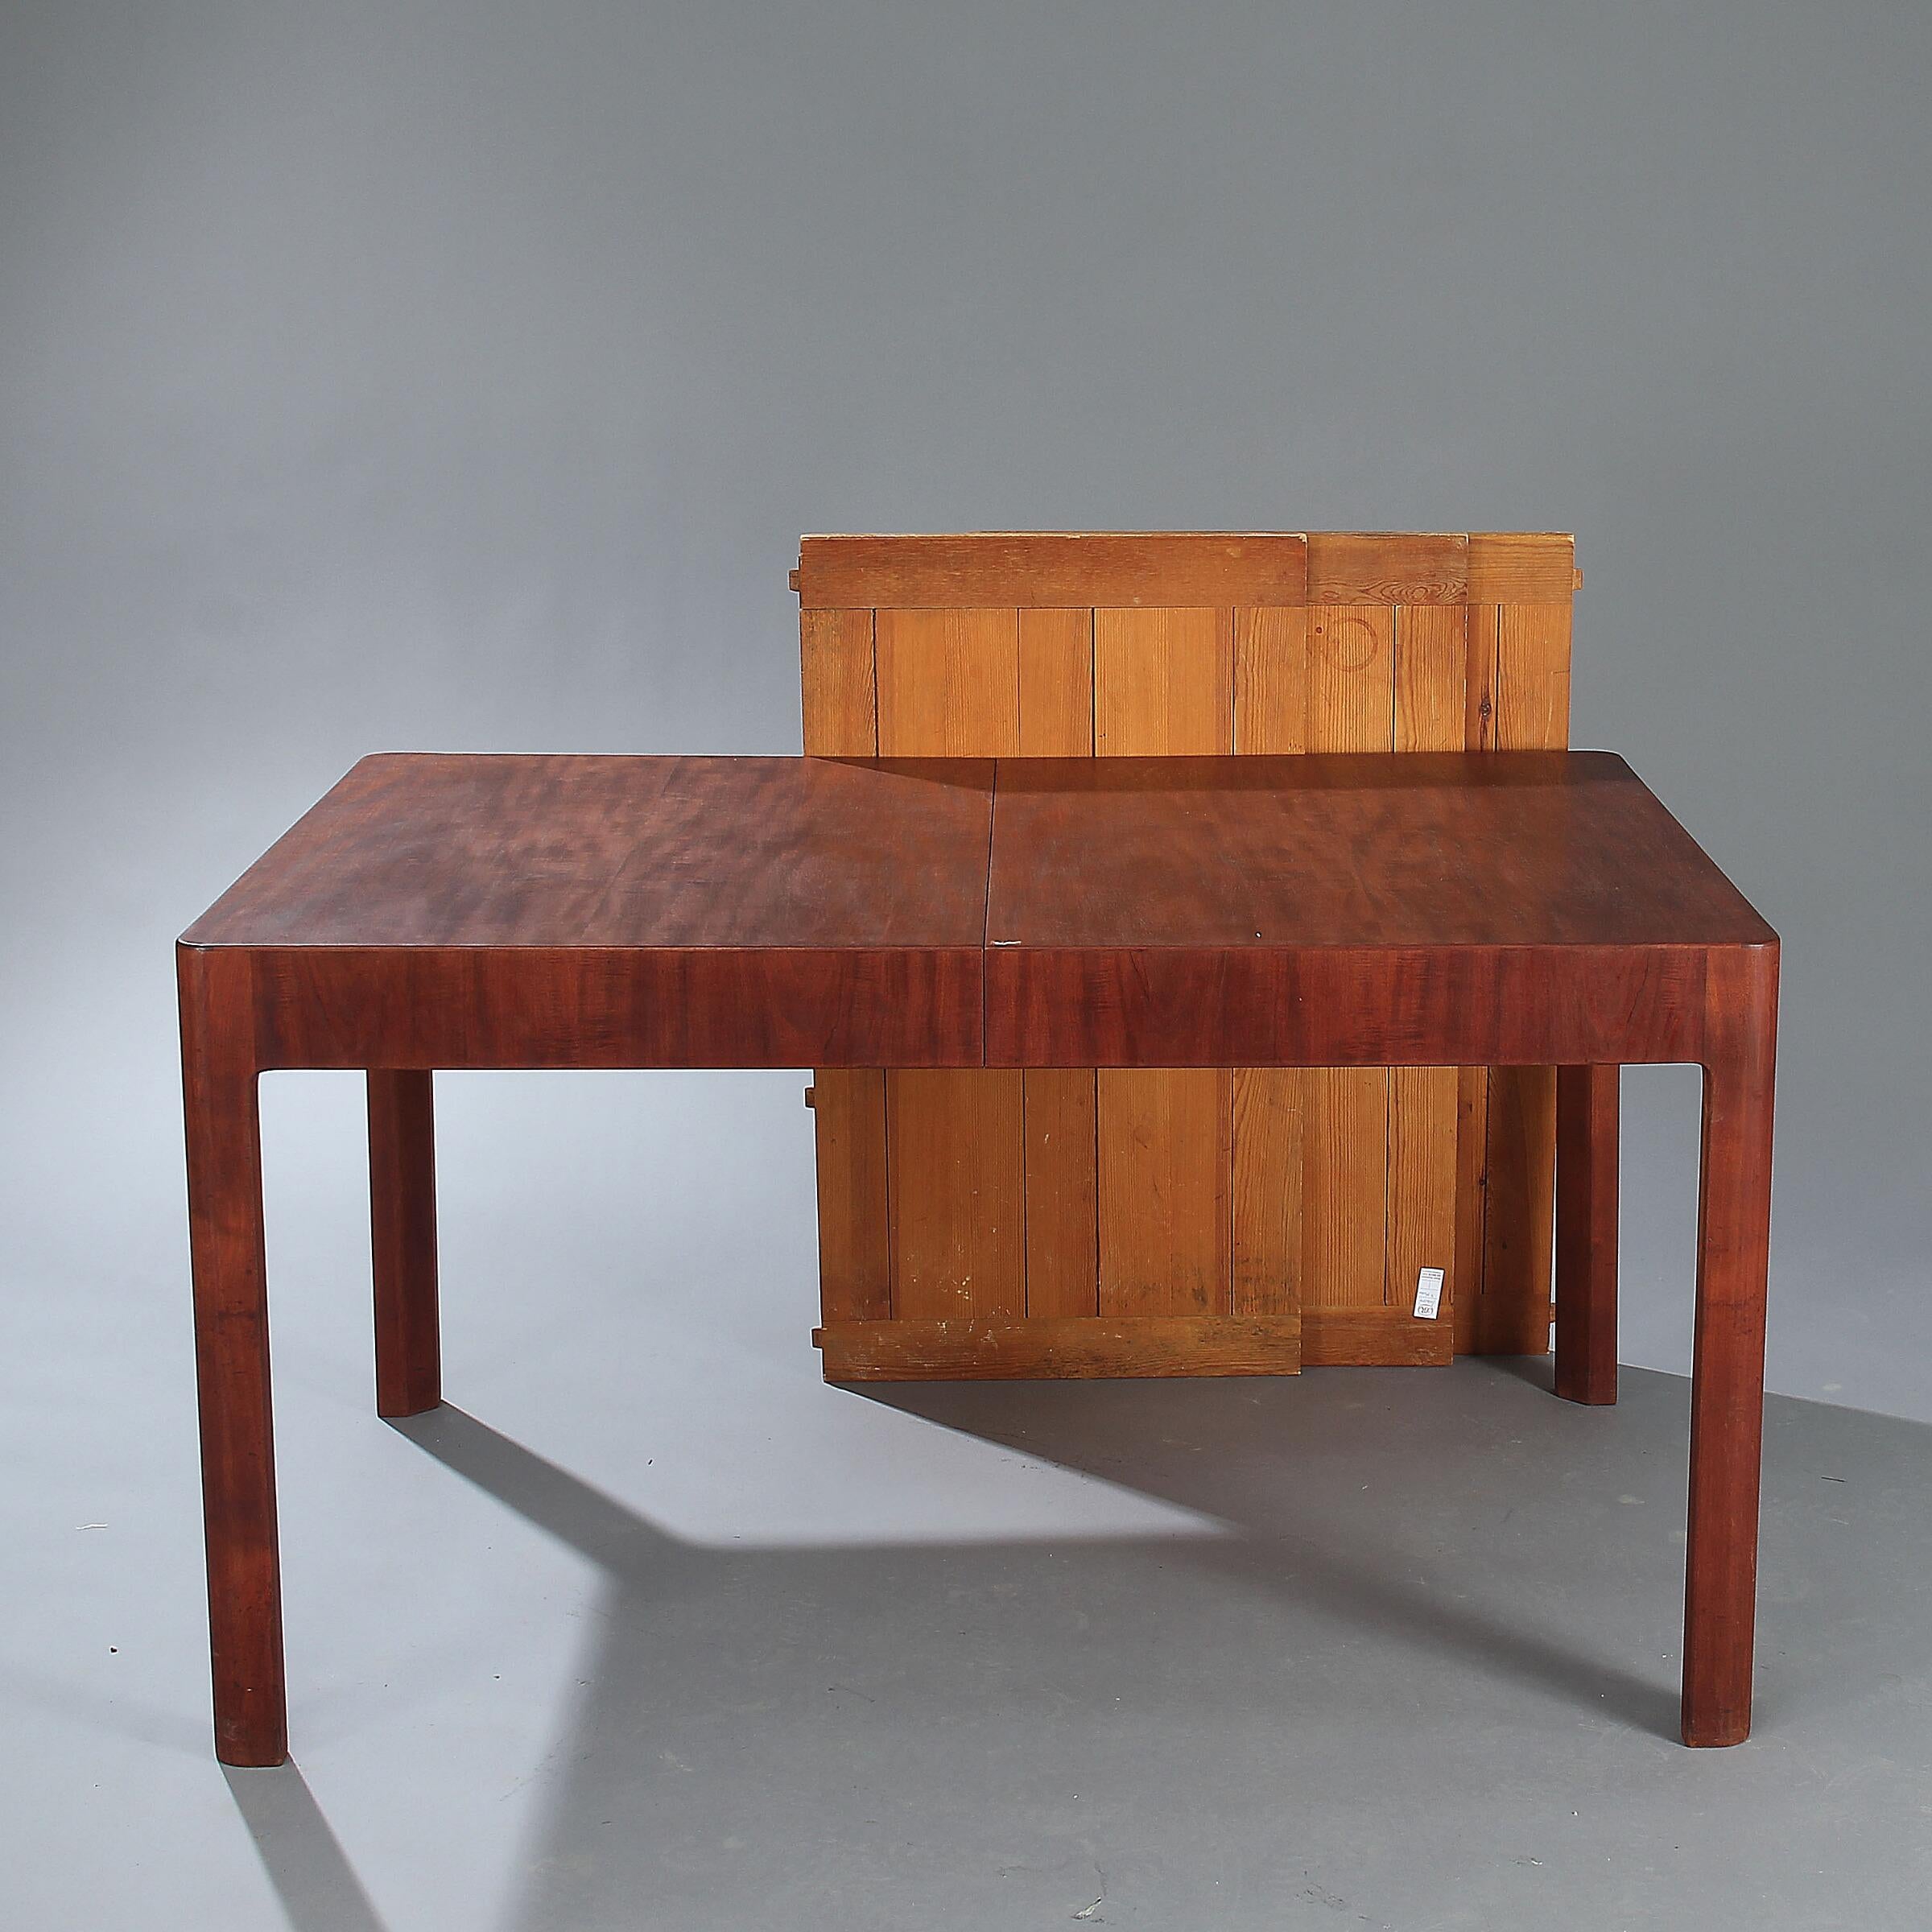 Table de salle à manger rectangulaire en bois de padouk avec rallonge pour trois feuilles de pin (les feuilles de pin sont d'un type de bois et d'une couleur différents et supposent l'utilisation d'une nappe lorsqu'elles sont rallongées). Fabriqué